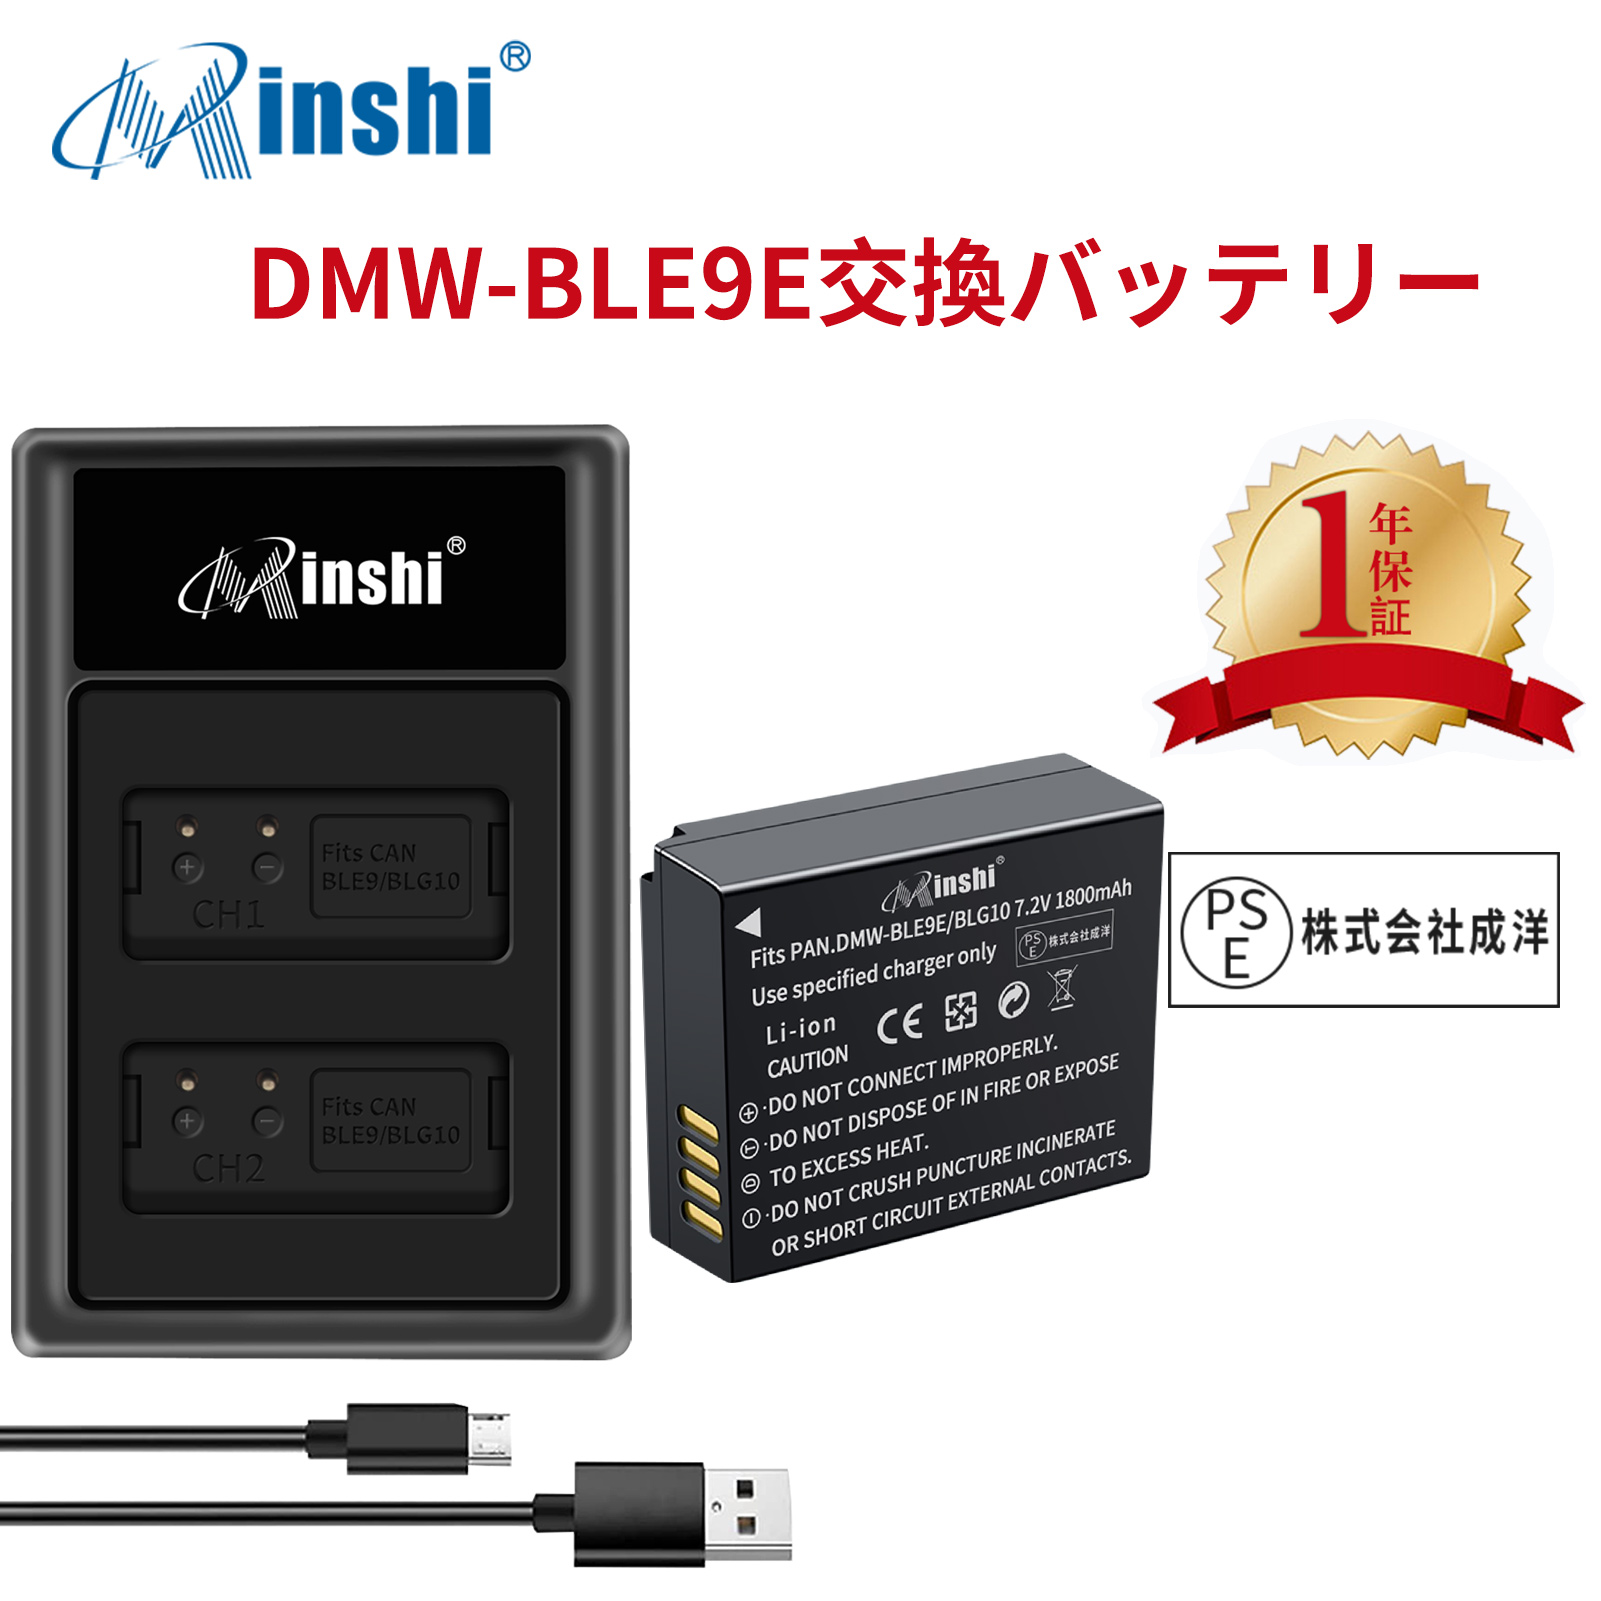 【1年保証】minshi Panasonic DMC-GX7 Mark II【1800mAh】【互換急速USBチャージャー】 高品質 DMW-BLG10 交換用バッテリー